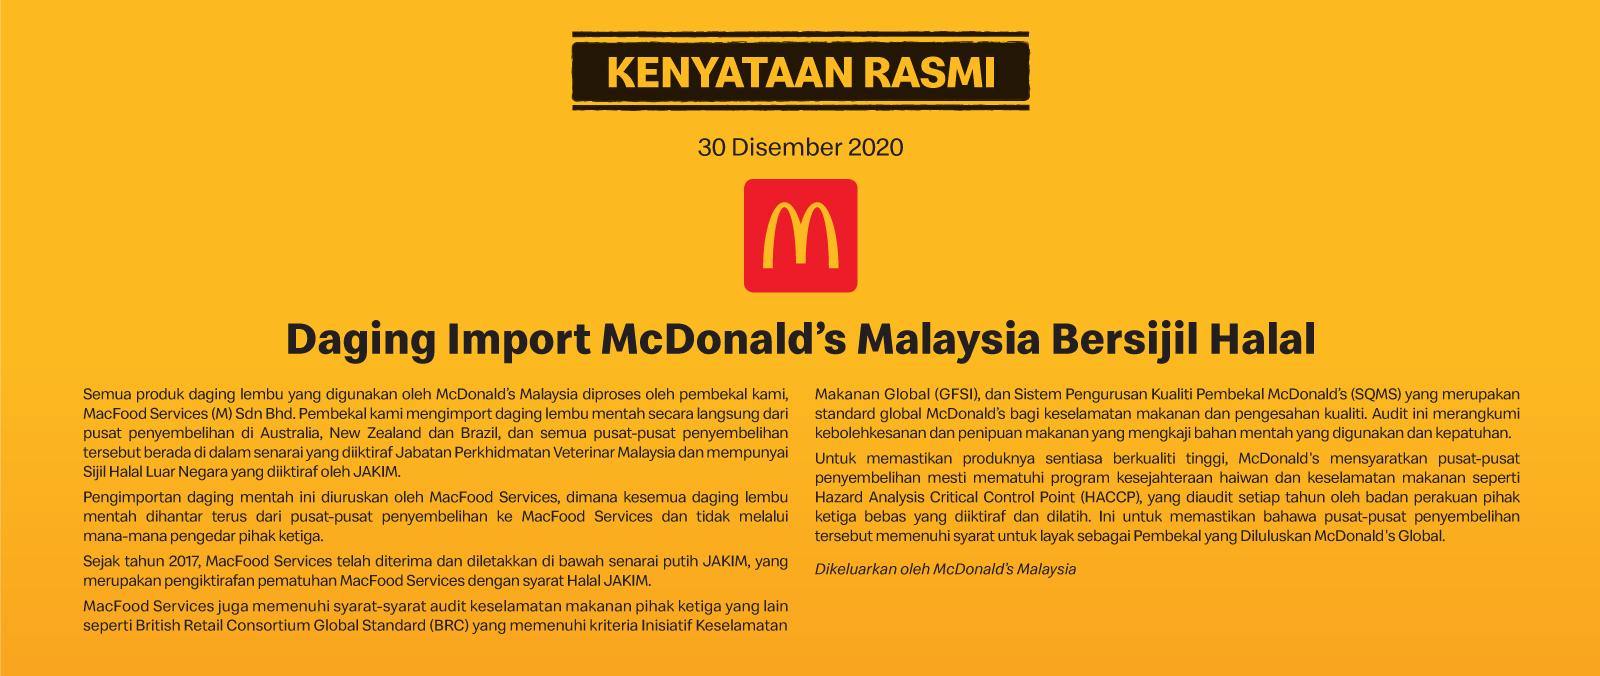 Daging Import McDonald’s Malaysia Bersijil Halal's image'